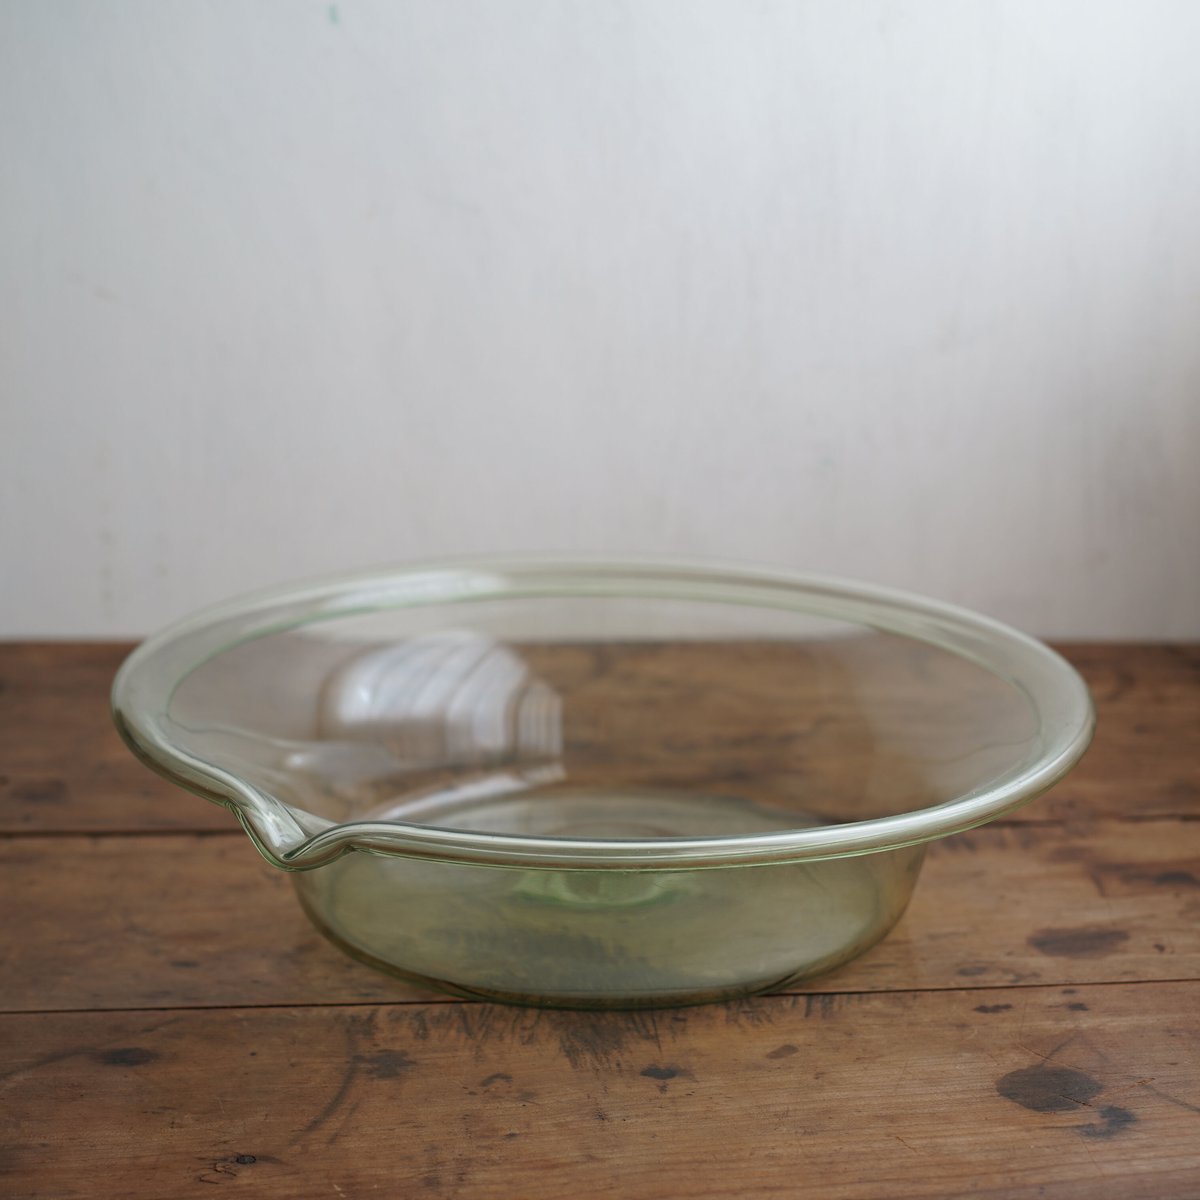 1800年代 スウェーデン 手吹きの色ガラス片口鉢 / Hand Blown Glass Bowl / Sweden 19th C.